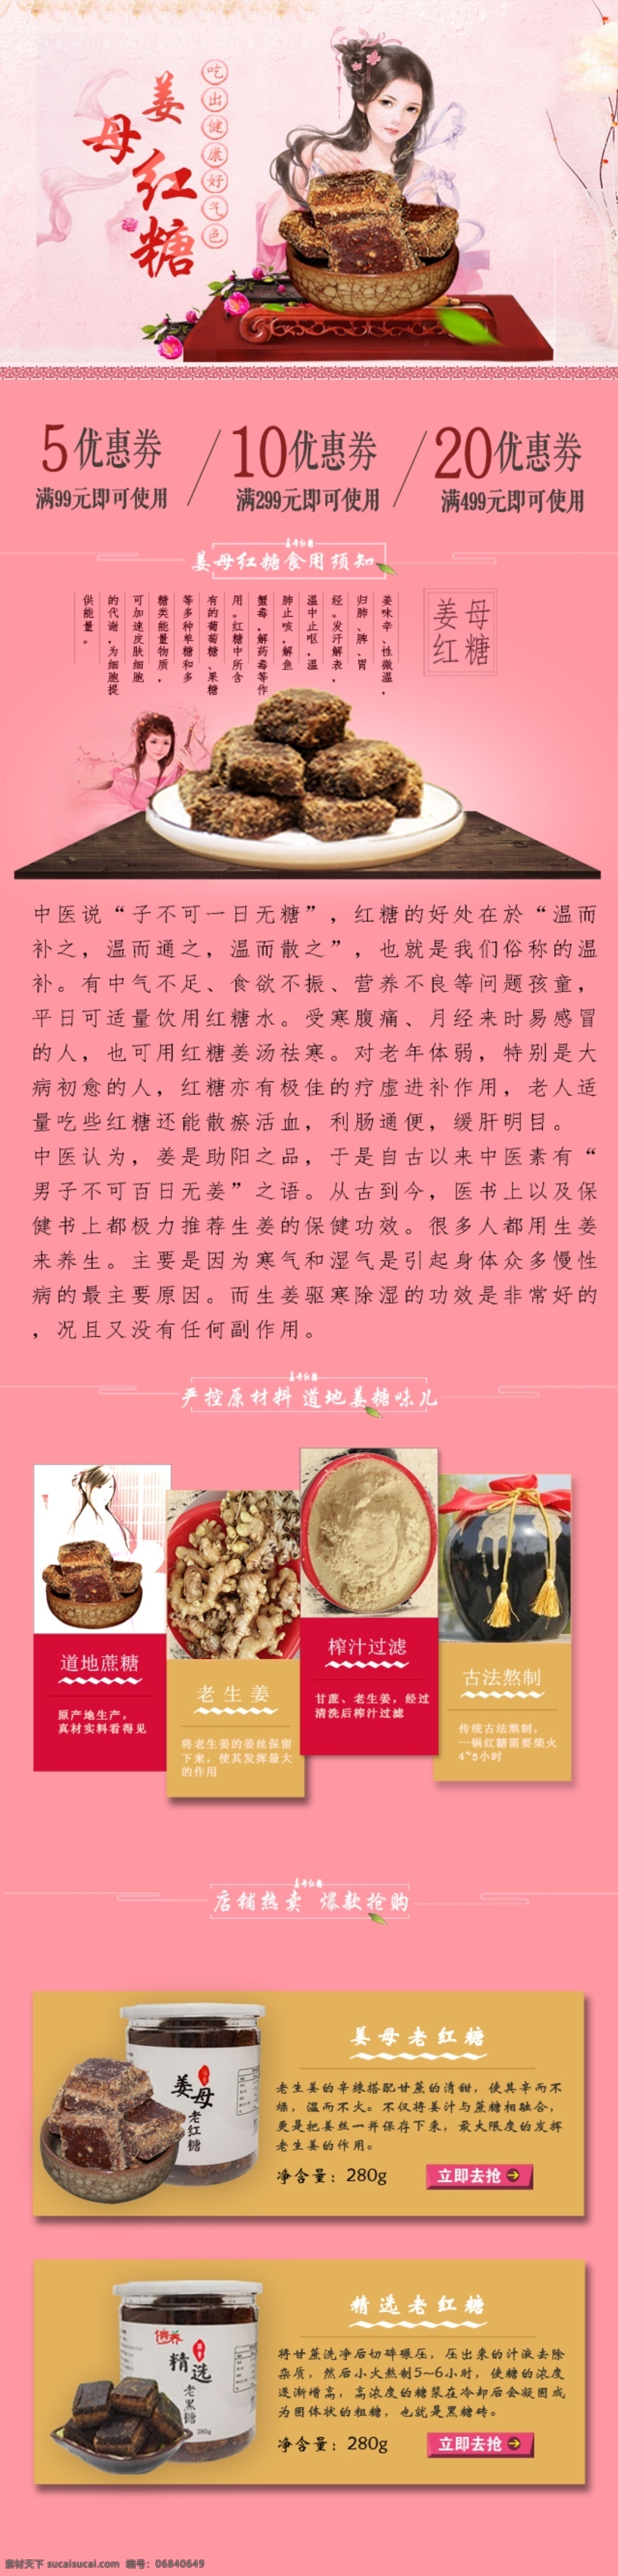 姜母红糖 淘宝 中国风 古典美女